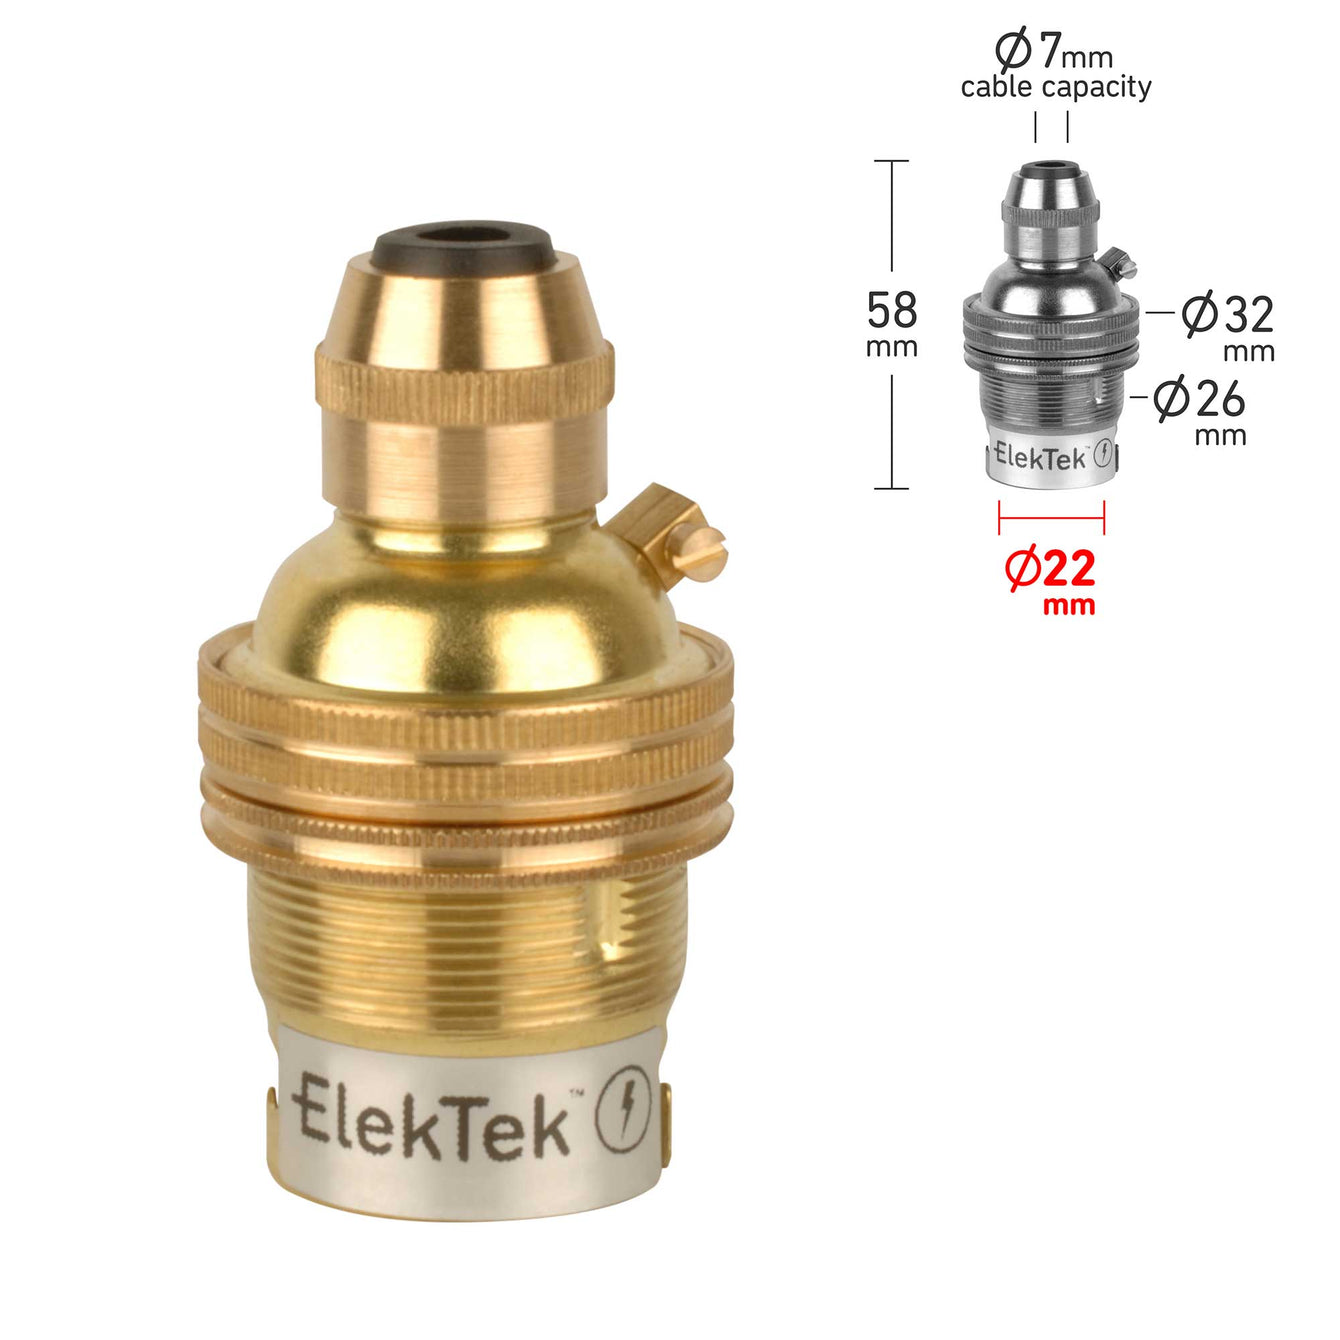 ElekTek Cord Grip B22 BC Pendant Lamp Holder Brass - Buy It Better Antique Brass